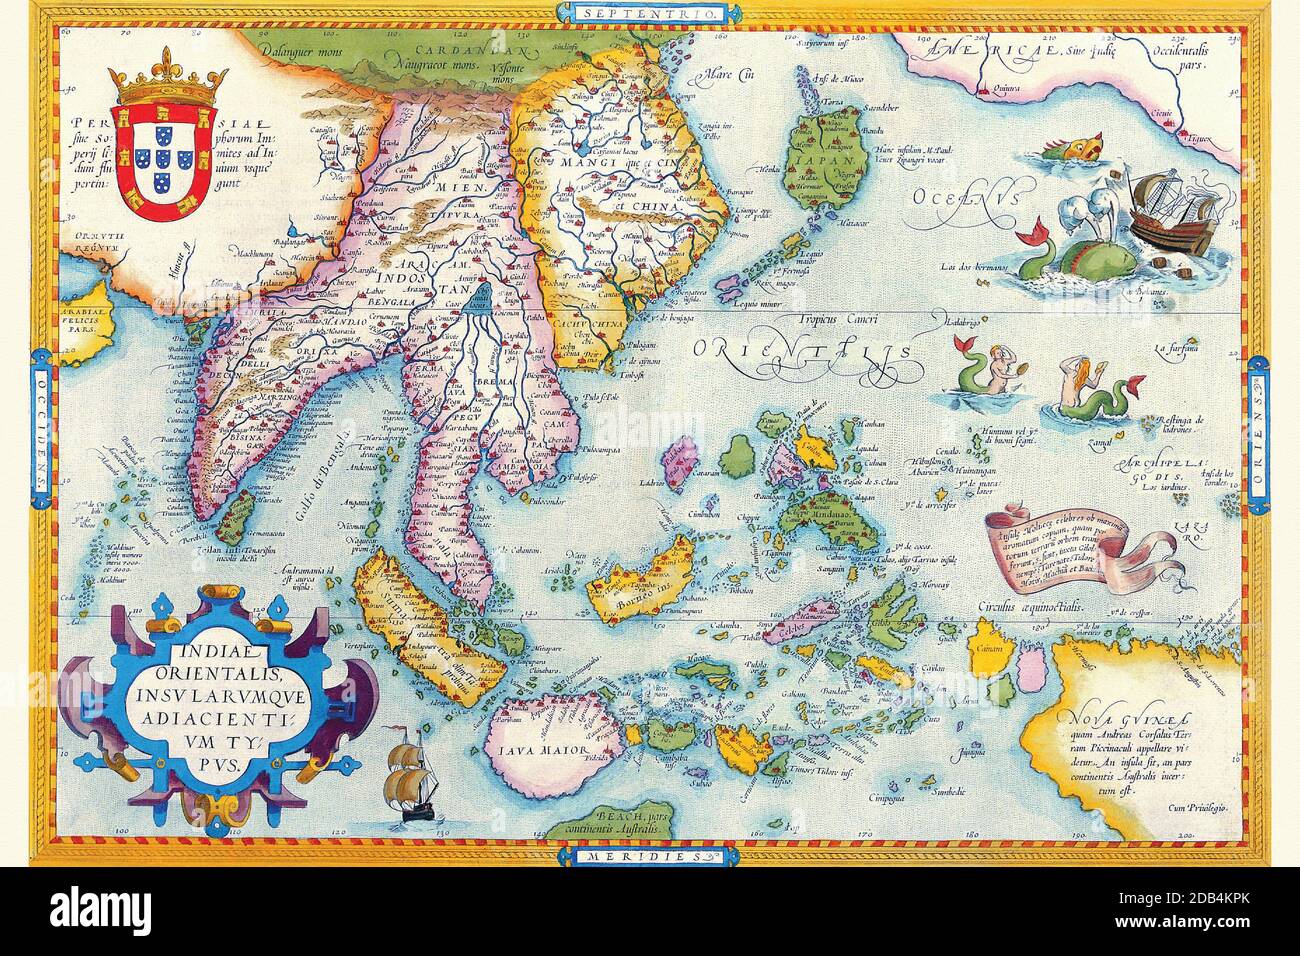 'Abraham Ortelius (Abraham Ortels) (14. April 1527 ? 28. Juni 1598) war ein flämischer Kartograph und Geograph, allgemein anerkannt als Schöpfer des ersten modernen Atlas, des Theatrum Orbis Terrarum (Theater der Welt). Er wird auch geglaubt, um die erste Person zu sein, die sich vorstellt, dass die Kontinente zusammengeschlossen wurden, bevor sie zu ihren gegenwärtigen Positionen driftten. 1564 vollendete er eine 'Appemonde', achtblättrige Weltkarte, die später in reduzierter Form im Theatrum erschien. Die einzige erhaltene Kopie dieser großartigen Karte befindet sich in der Bibliothek der Universität Basel. Am 20. Mai 1570, Gilles Stockfoto